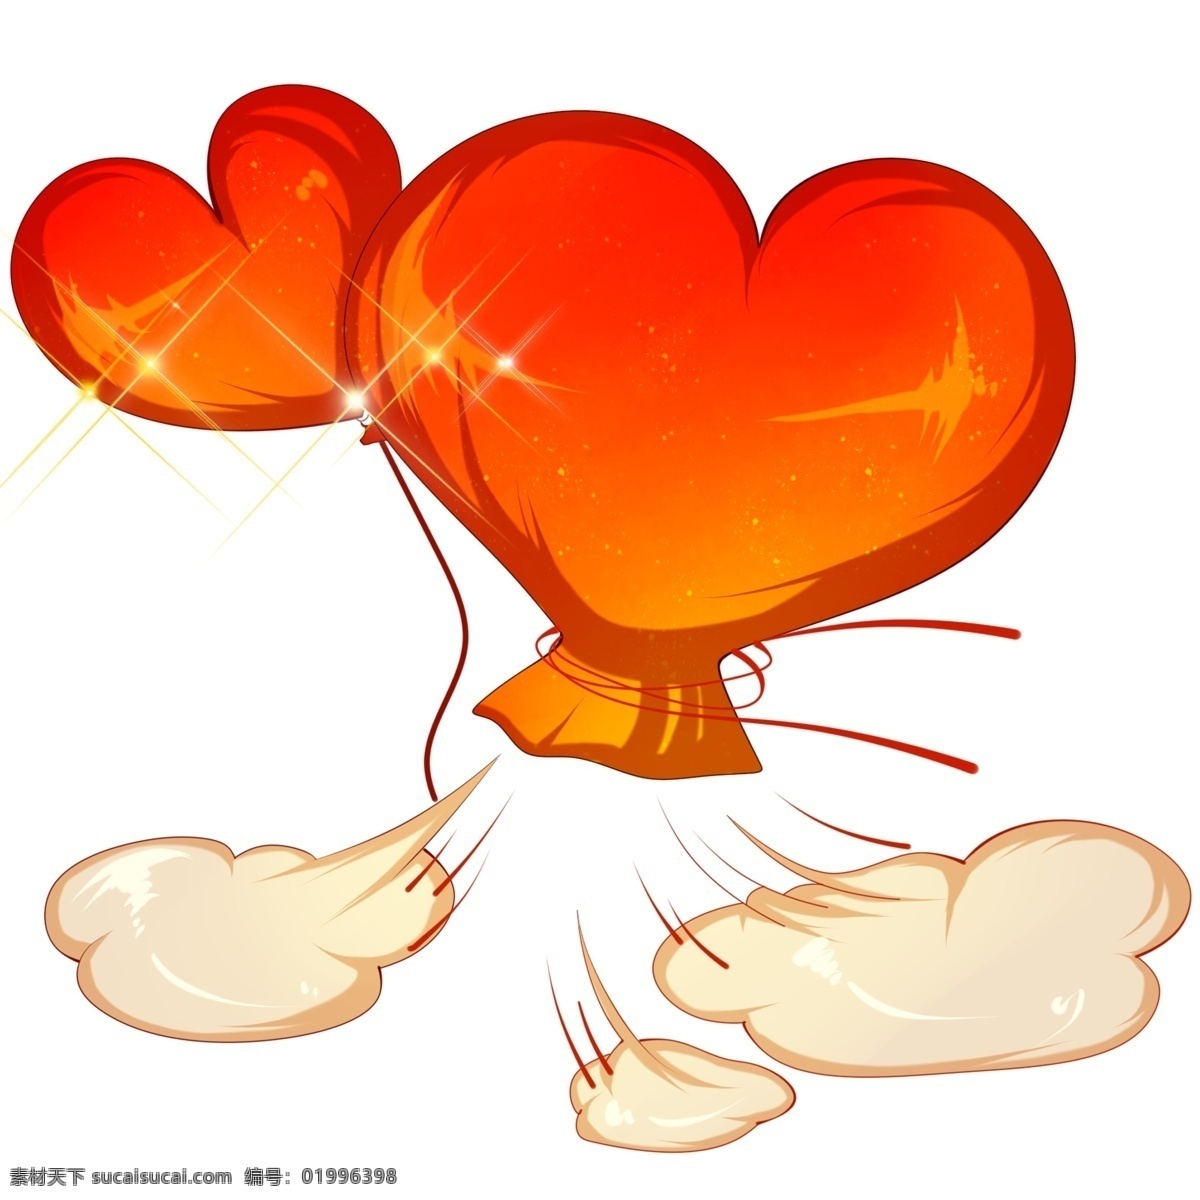 红色 爱心 气球 插画 气球的爱心 卡通插画 红色爱心 装饰插画 爱心插画 挂饰爱心 气球的挂饰